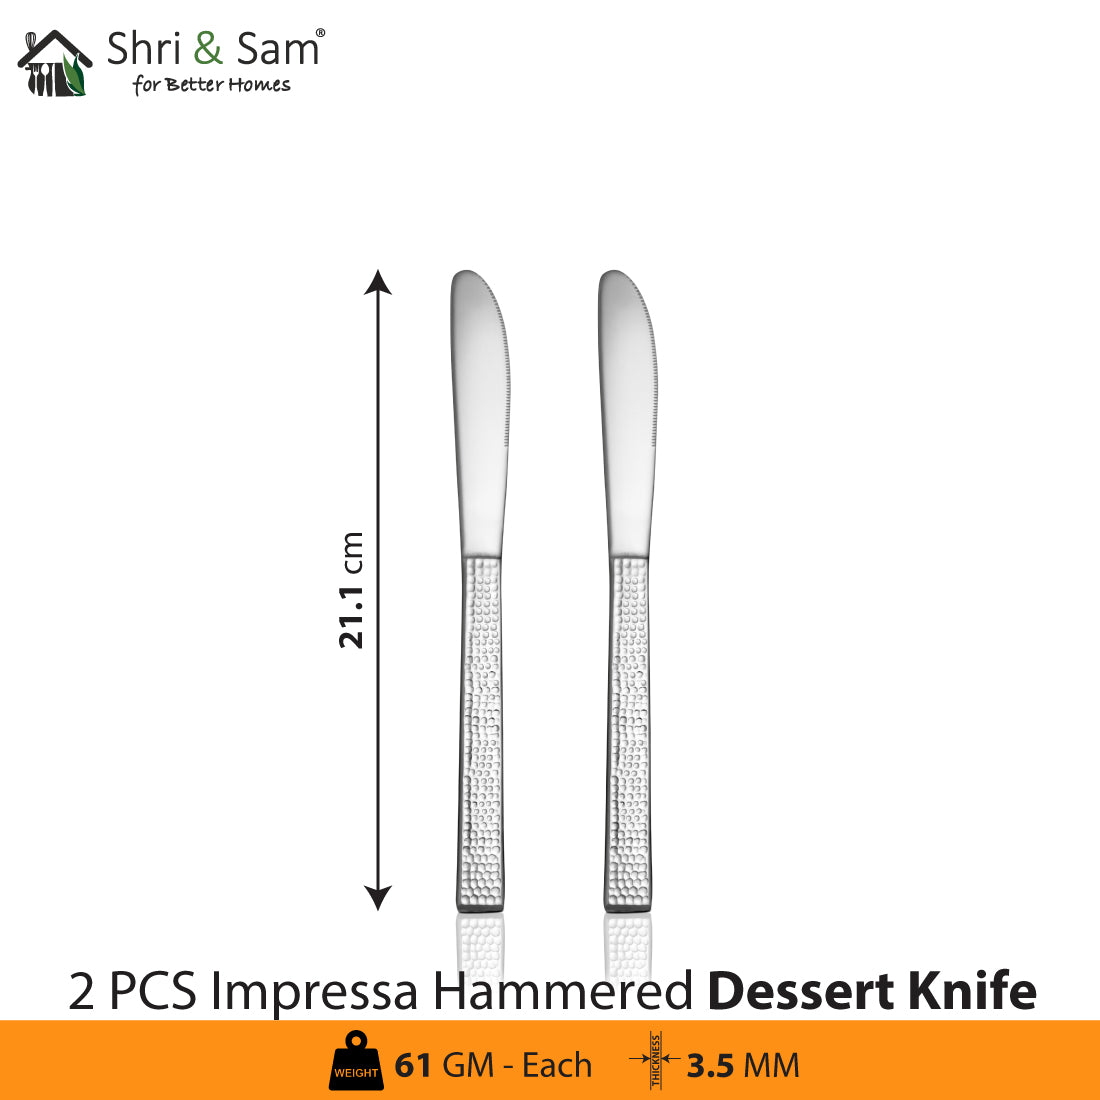 Stainless Steel Cutlery Impressa Hammered